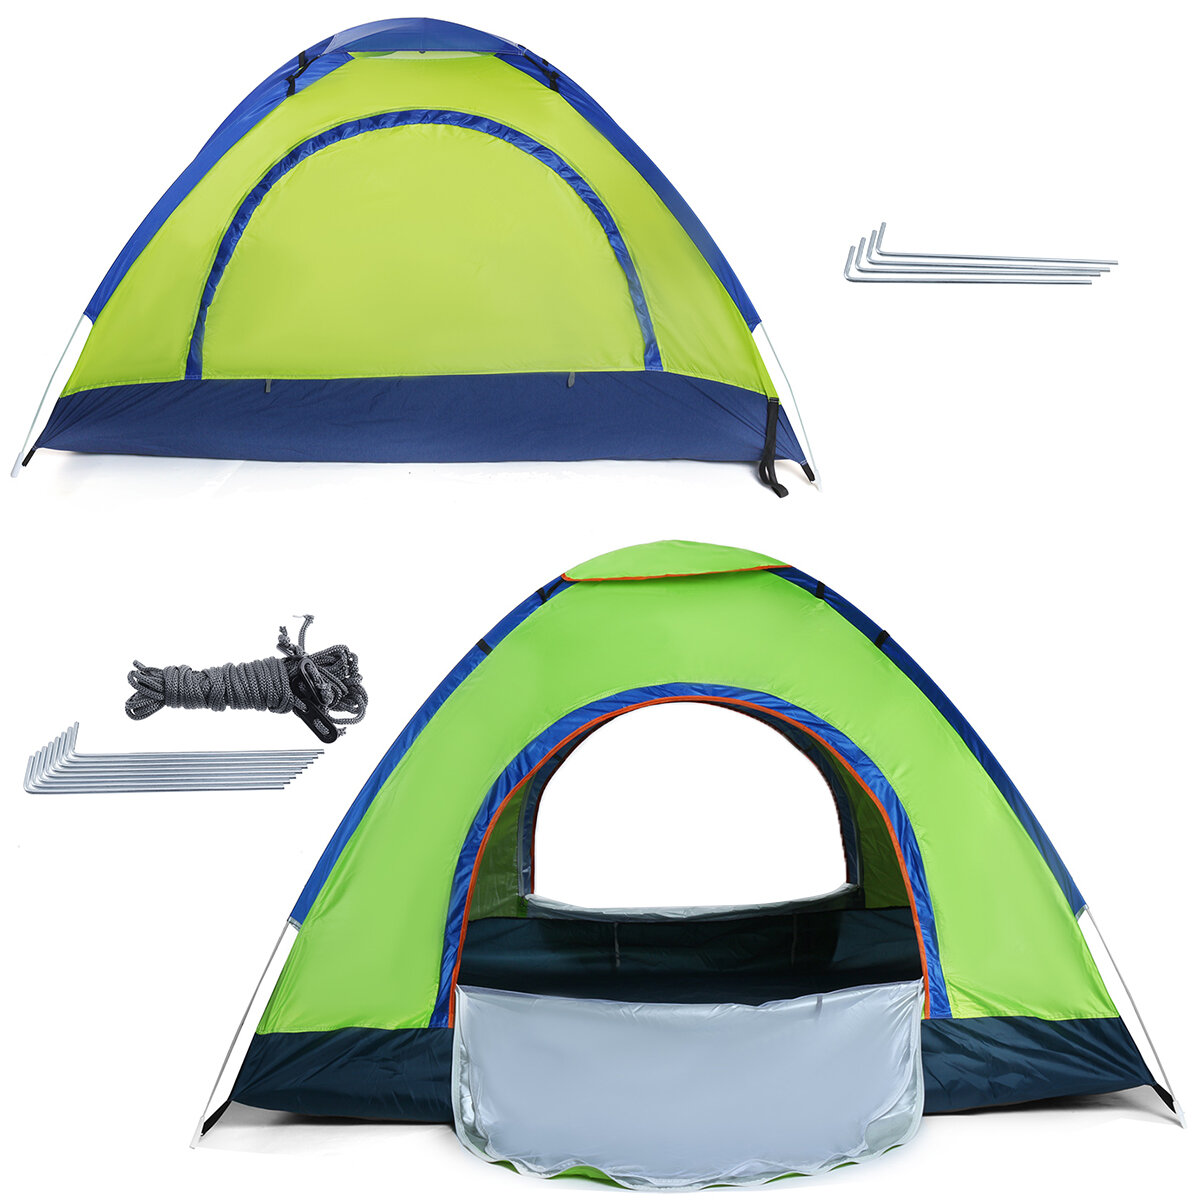 o: Tenda automatica impermeabile per il campeggio, per 1-2/3-4 persone